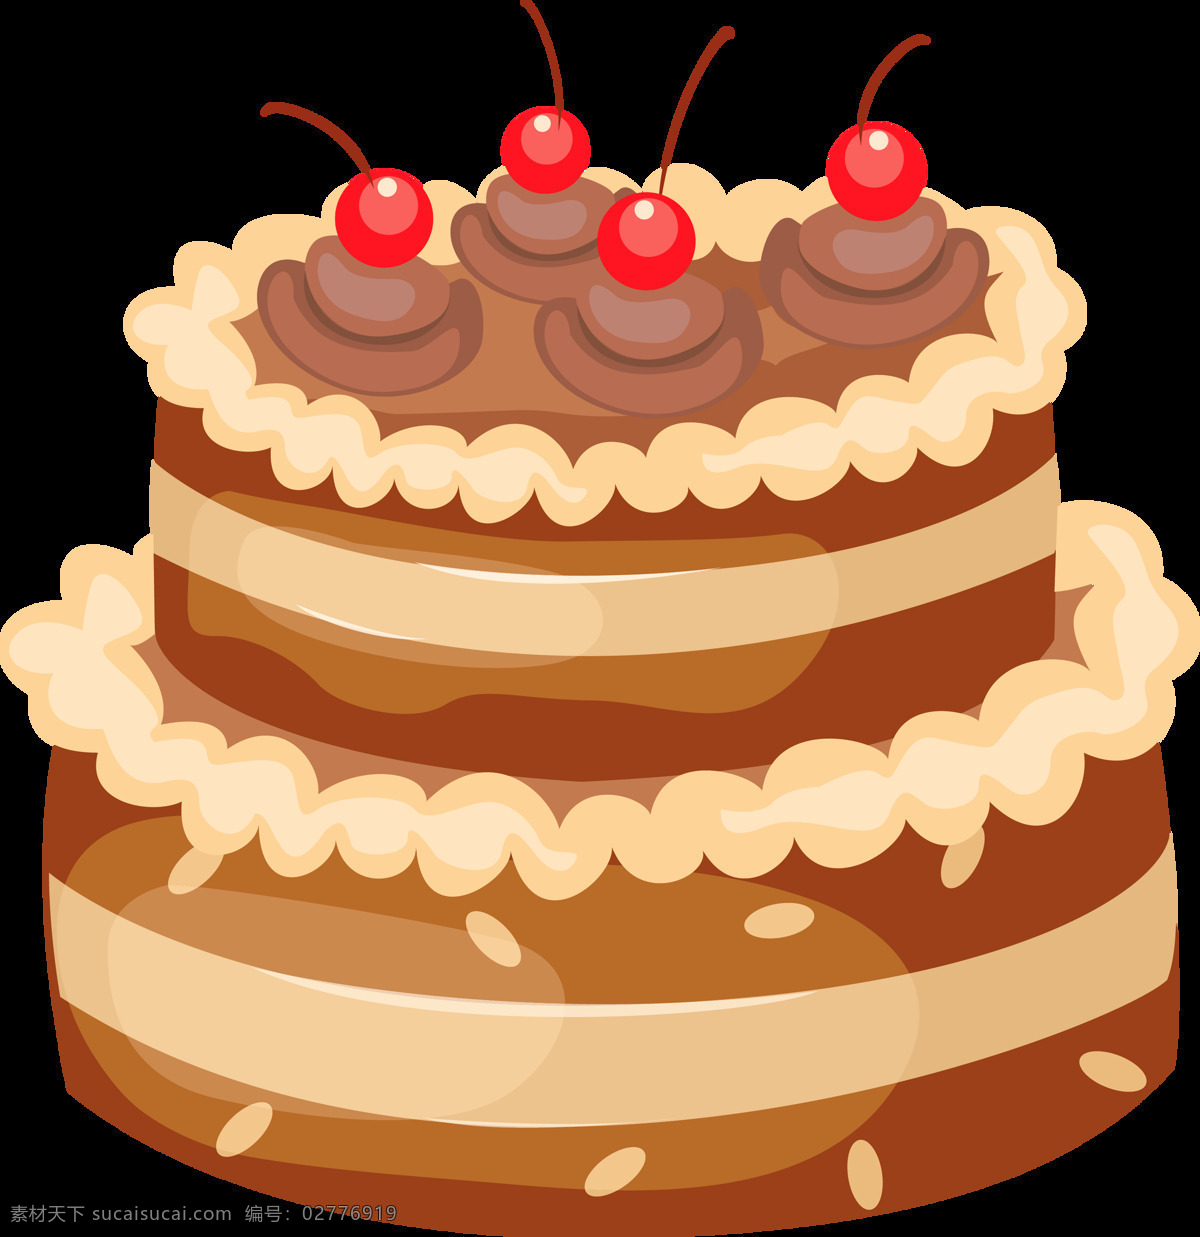 双层 樱桃 蛋糕 免 抠 透明 图 层 世界 上 最 漂亮 创意 生日蛋糕 大全 女神生日蛋糕 蛋糕图片 生日蛋糕图片 糕点图片 婚礼蛋糕 巧克力蛋糕 水果蛋糕 奶油蛋糕